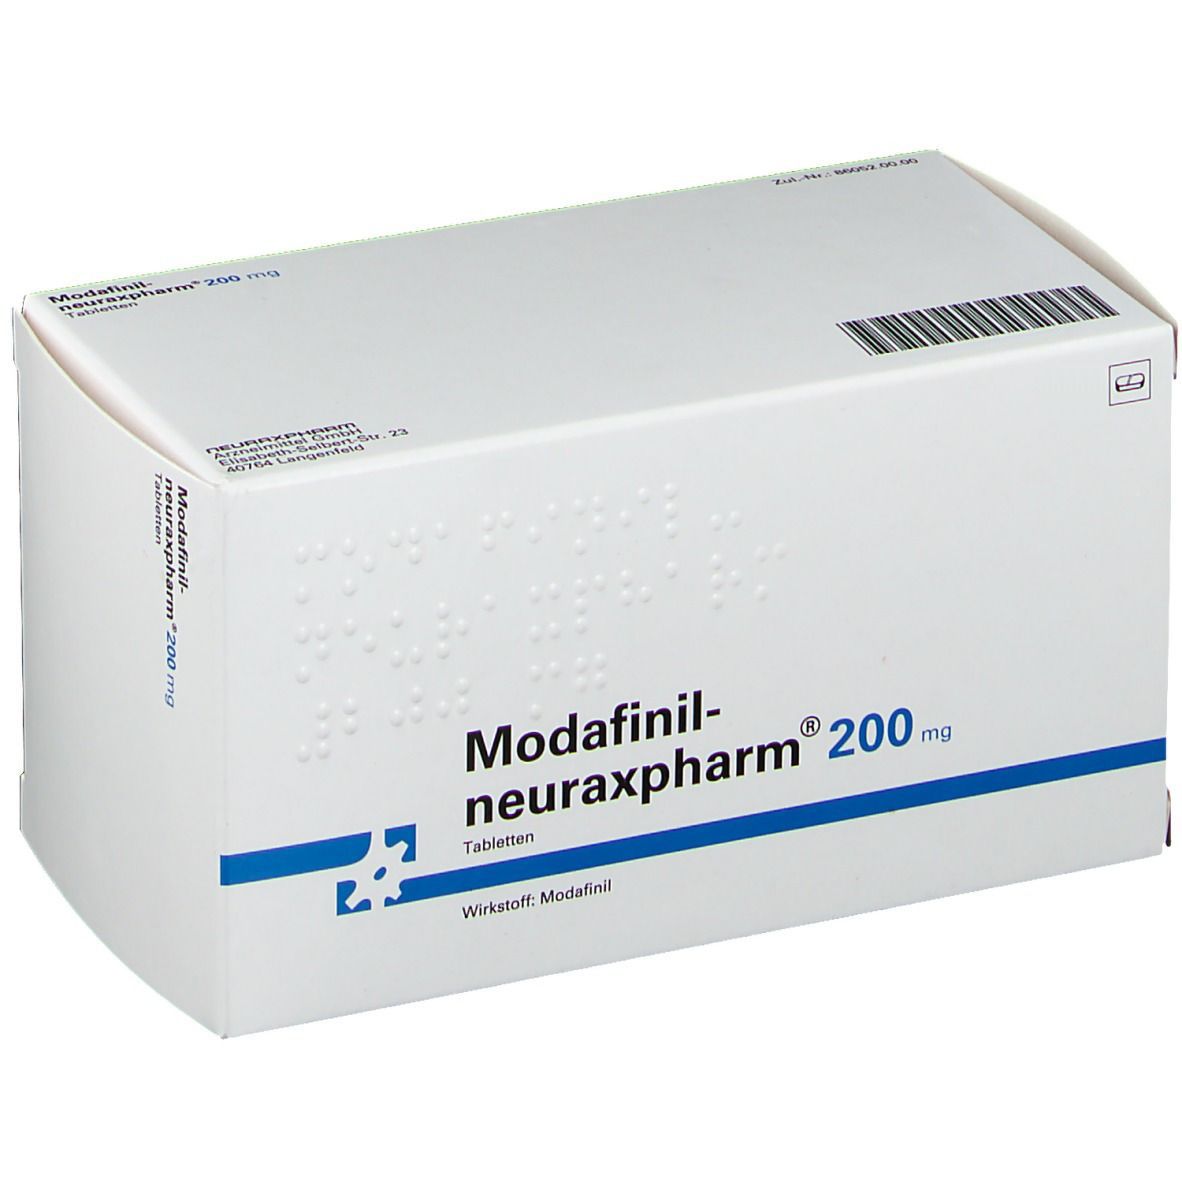 Modafinil-neuraxpharm® 200 mg